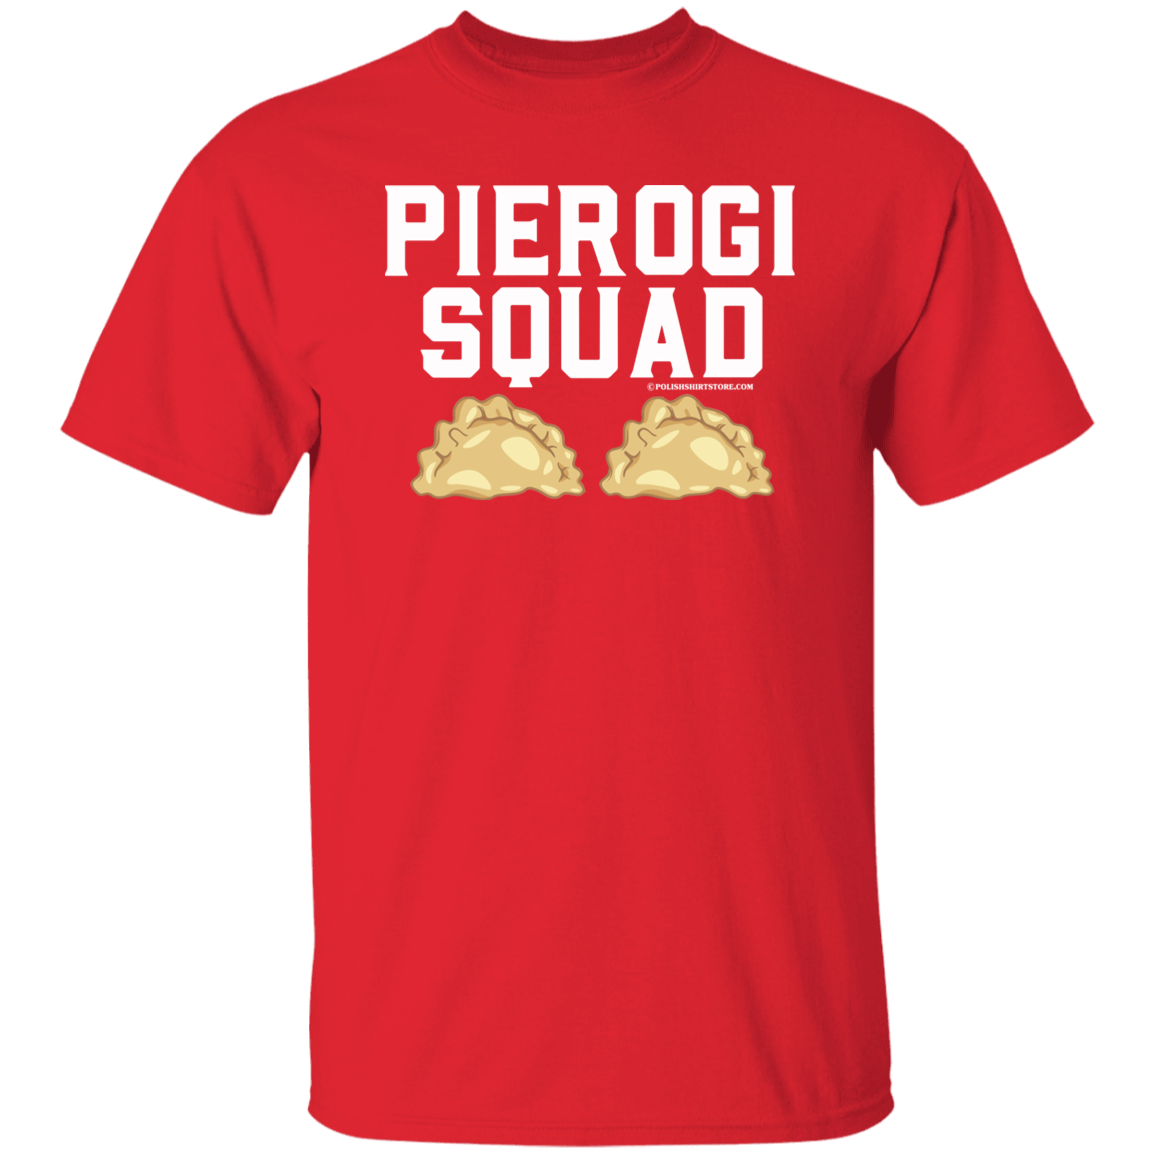 Pierogi Squad Apparel CustomCat G500 5.3 oz. T-Shirt Red S